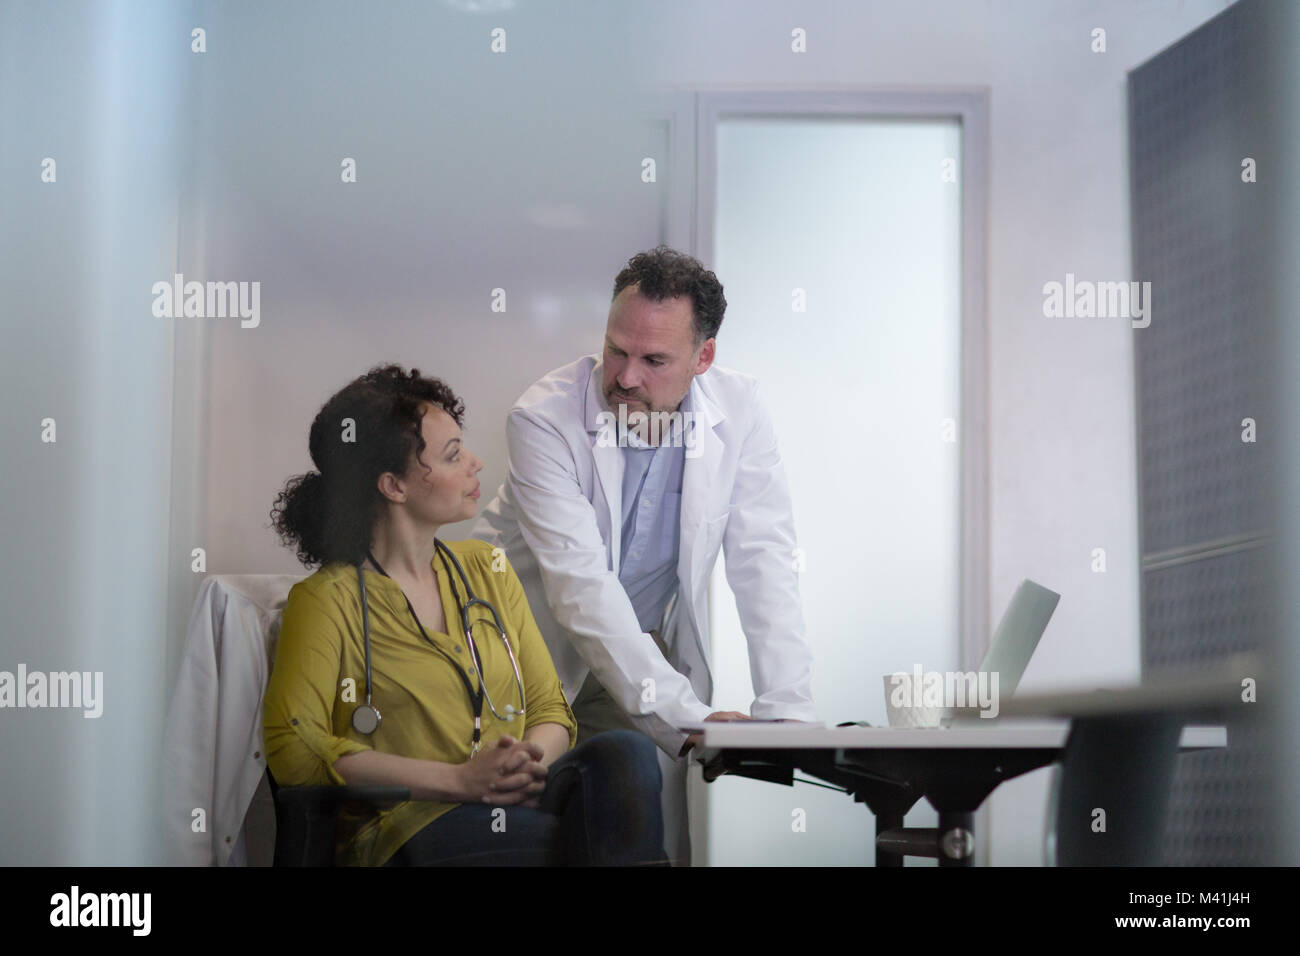 Los médicos del tratamiento del paciente discutir juntos Foto de stock